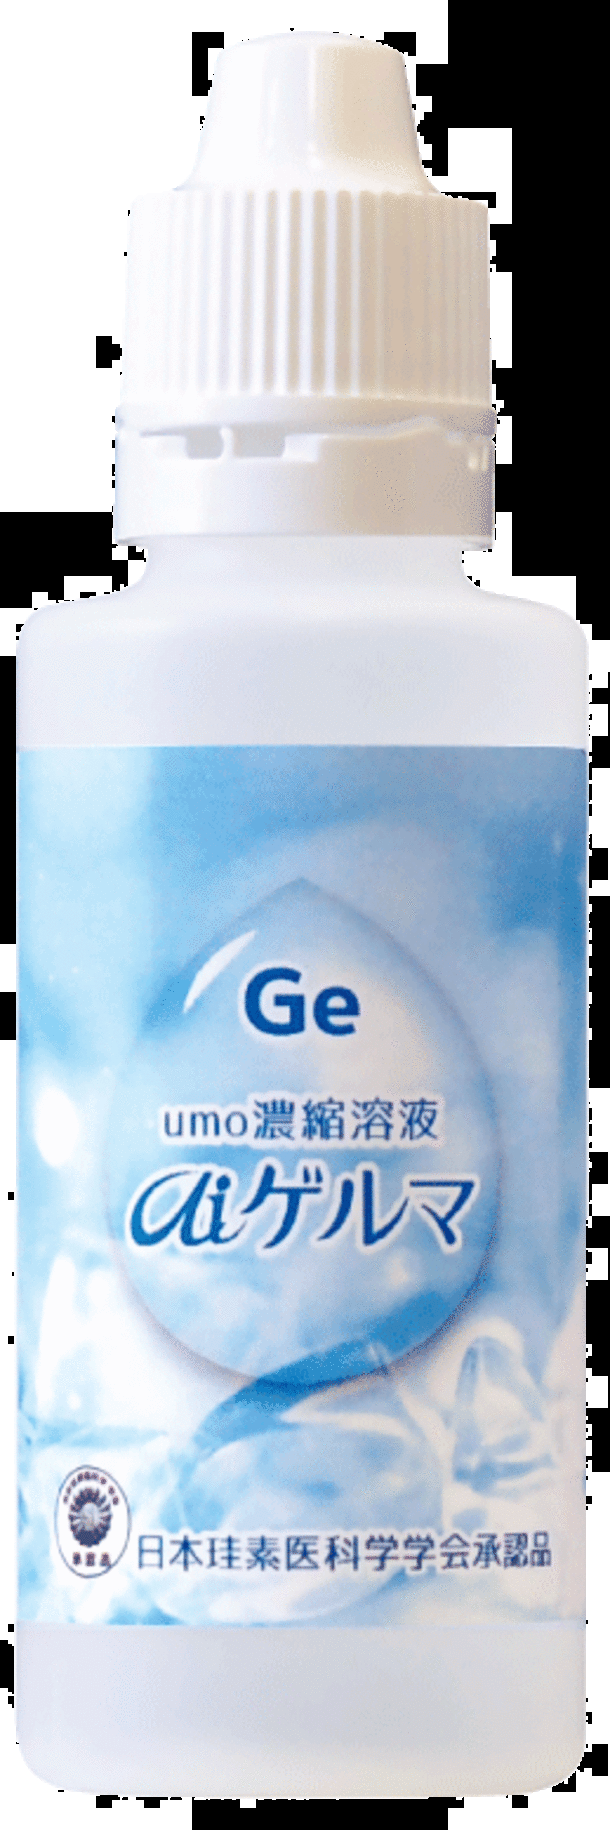 手軽にミネラル補給できる『umo濃縮溶液 aiゲルマ』が全国発売 ケイ素 